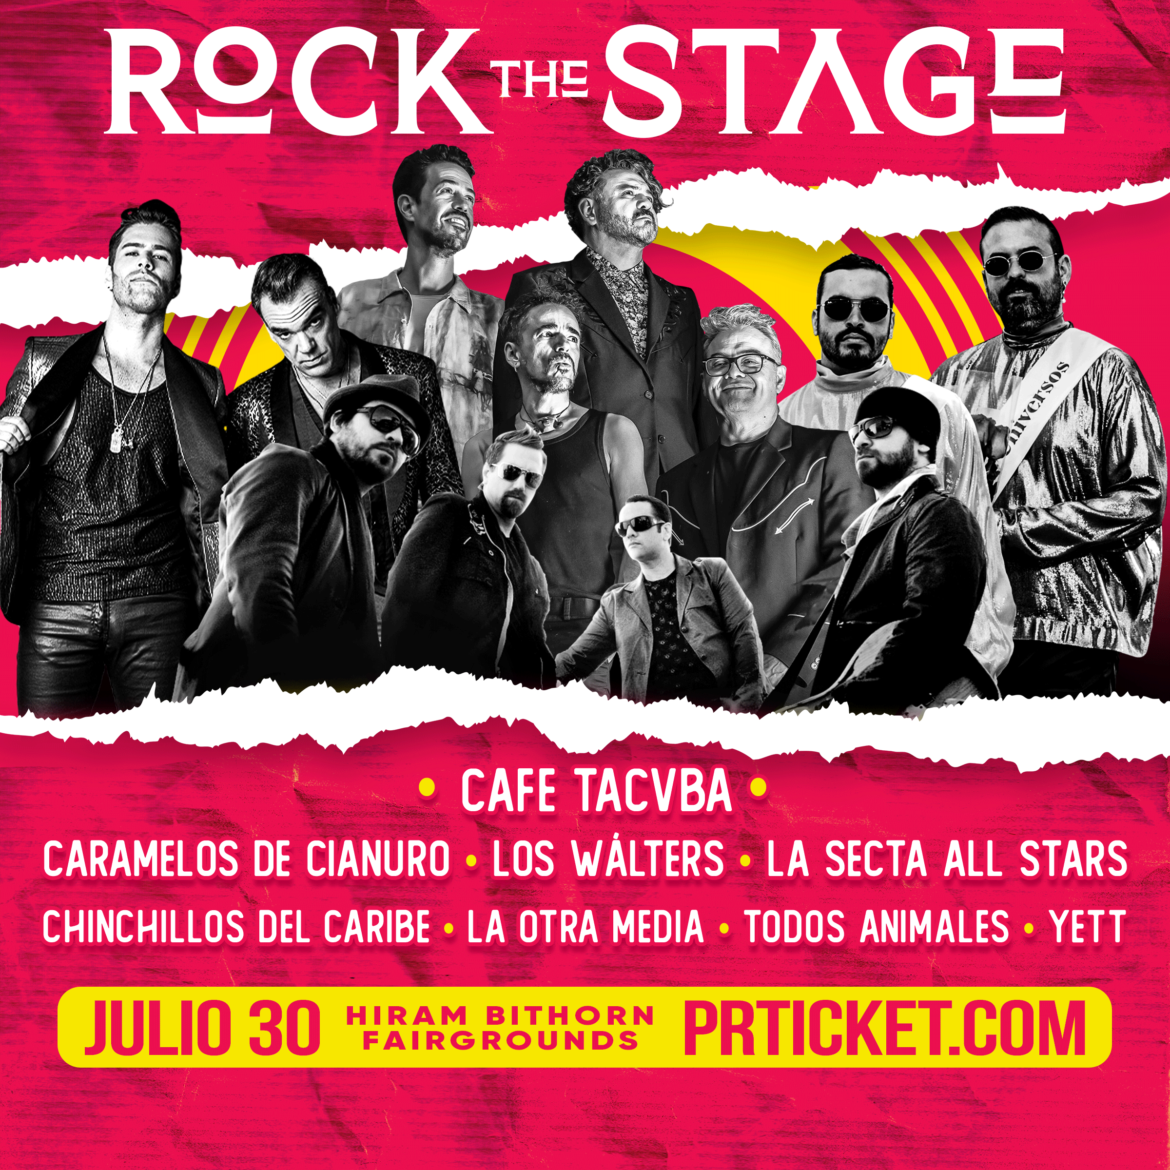 Café Tacvba, Caramelos de Cianuro, Los Wálters, La Secta All Stars y muchos más  se presentarán en “Rock The Stage”